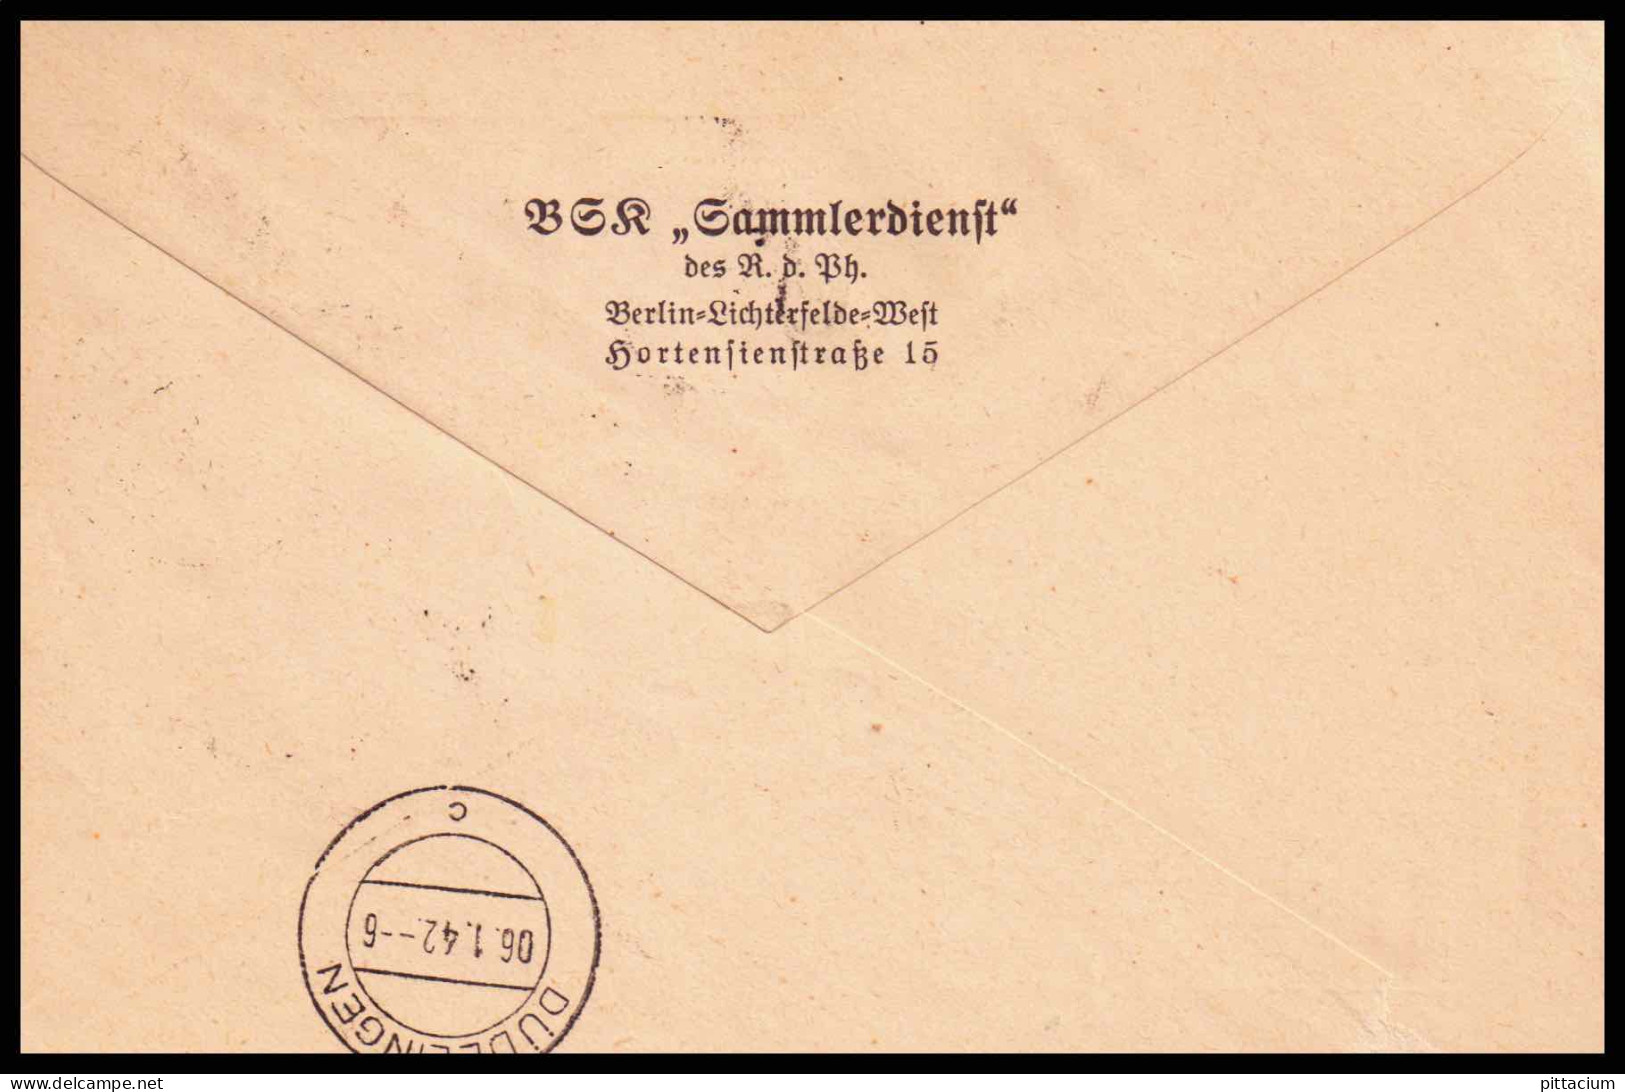 Luxemburg 1941: Brief / Einschreiben | Besatzung, R-Zettel | Luxemburg;Luxembourg, Düdelingen;Dudelange - 1940-1944 Deutsche Besatzung